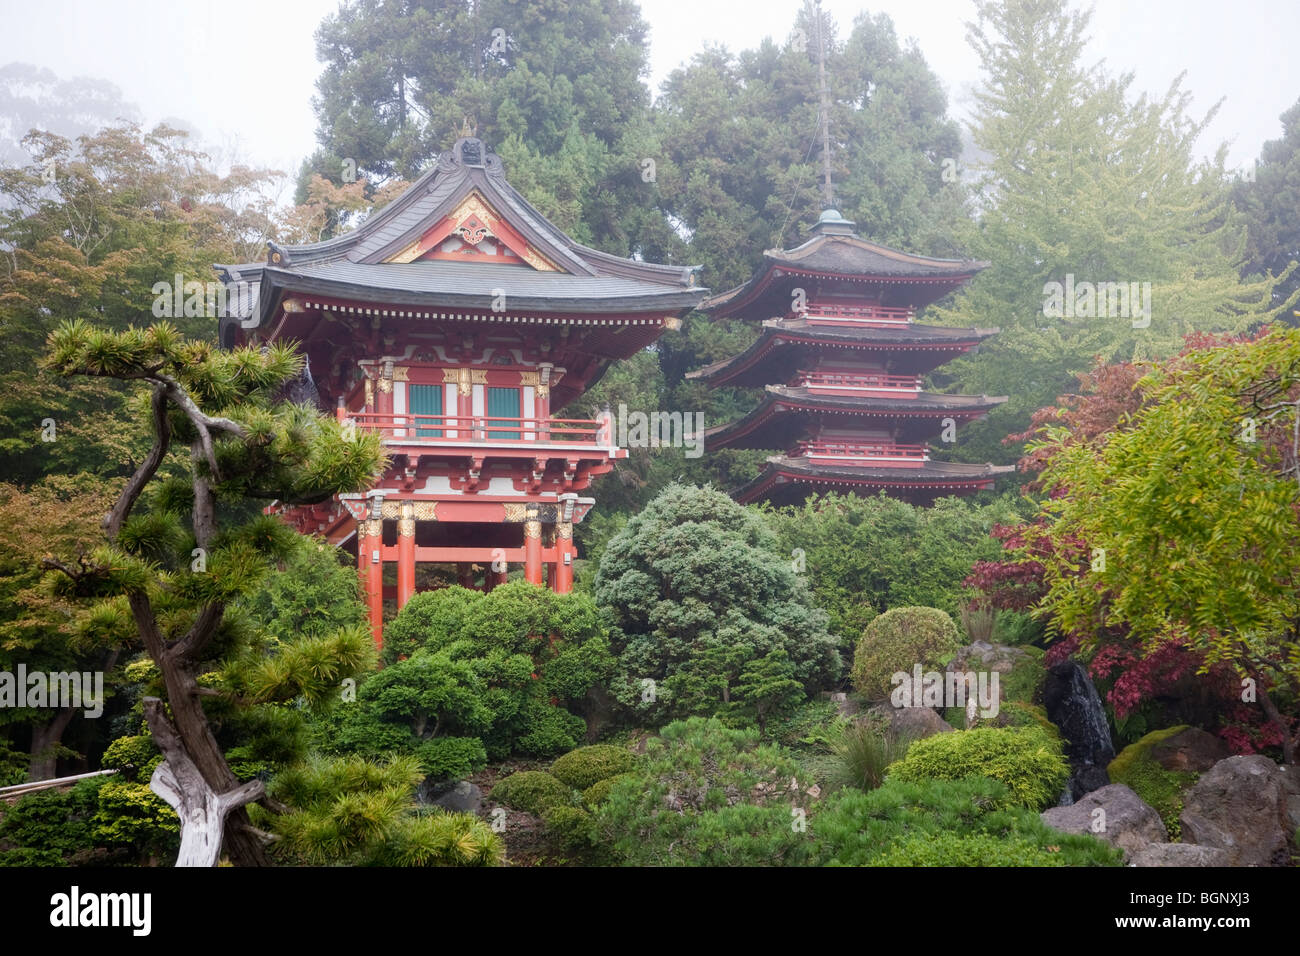 Porte du Temple et Pagoda - Japanese Tea Garden, le Golden Gate Park, San Francisco en Californie, USA Banque D'Images